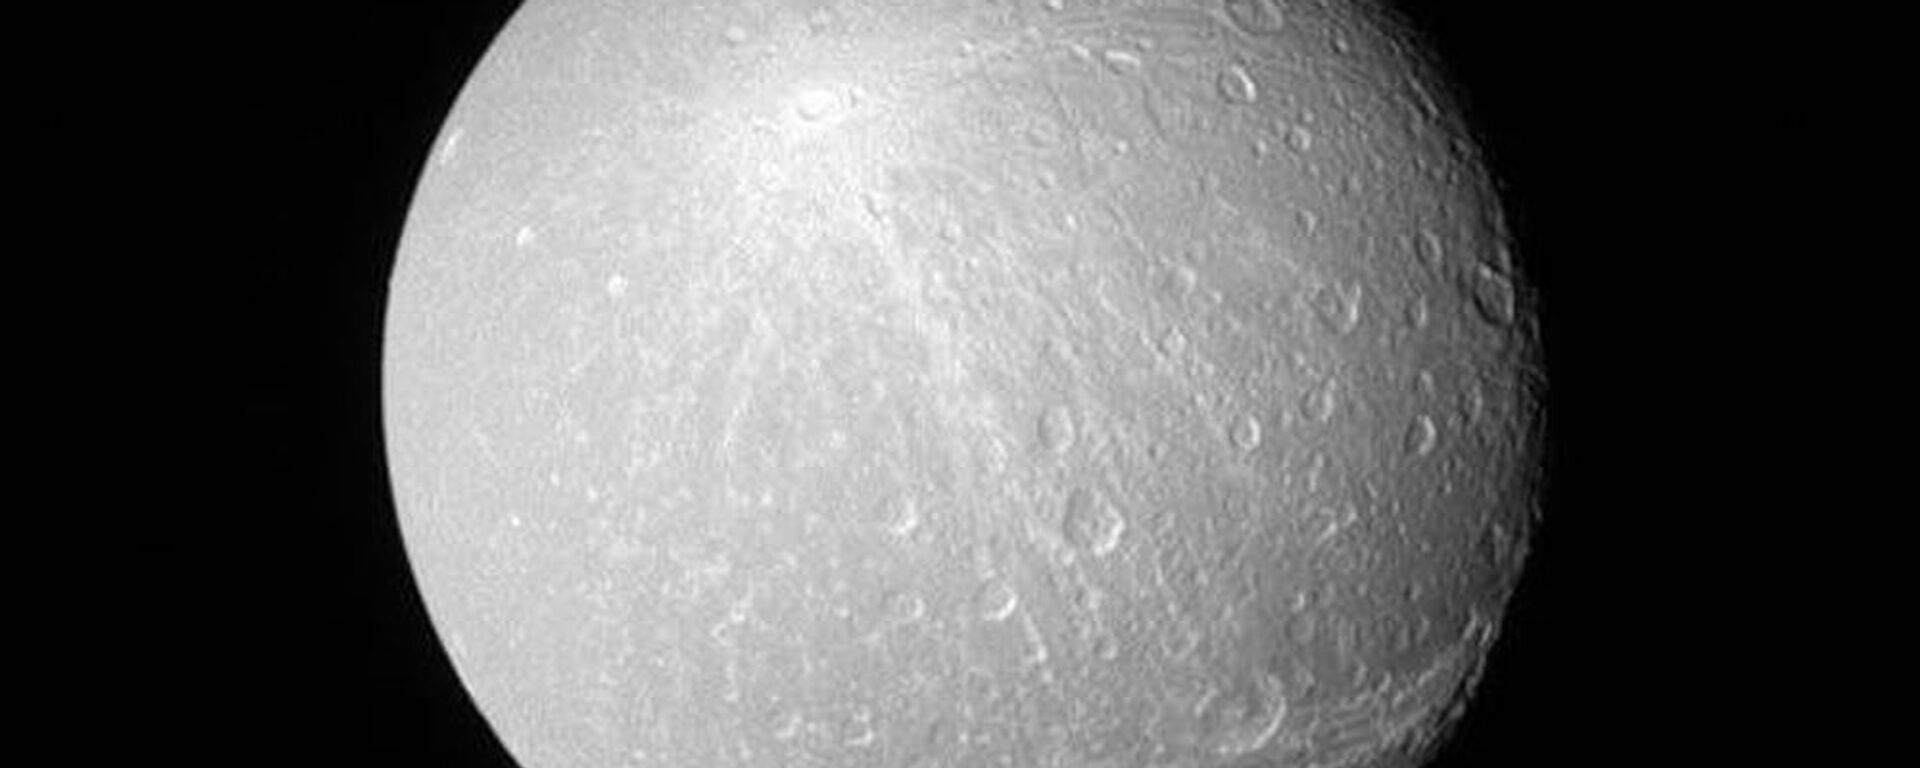 فوهات كريوسا على سطح القمر - ويعتقد العلماء أنه من خلال هذه الفوهات يمكن معرفة تاريخ ومصدر إنشاء هذه الفوهات - سبوتنيك عربي, 1920, 09.07.2022